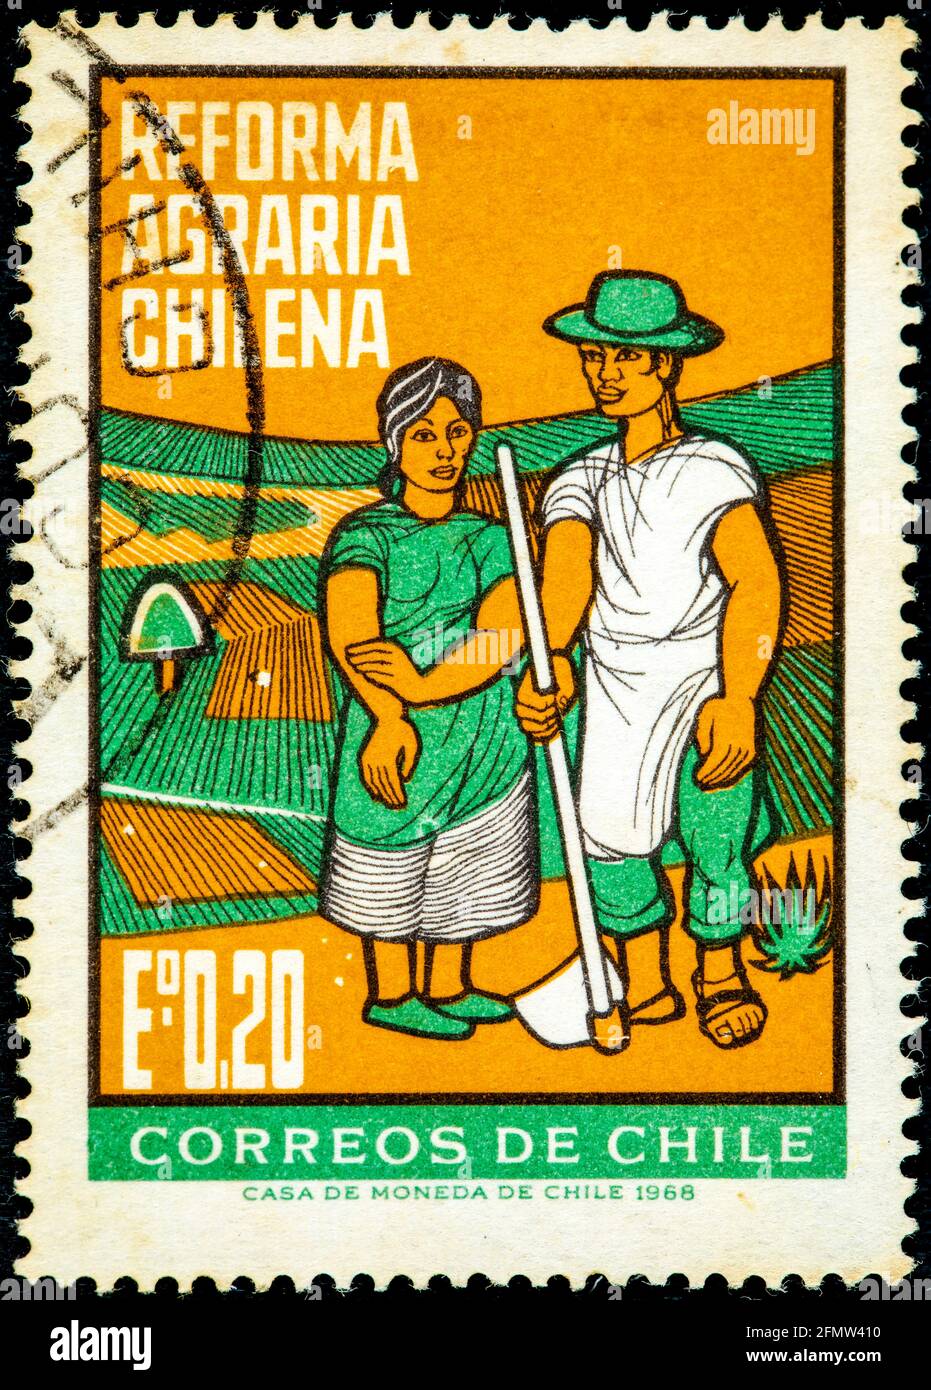 CHILI - VERS 1968: Un timbre imprimé au Chili montre Farm couple, réformes agraires, vers 1968 Banque D'Images